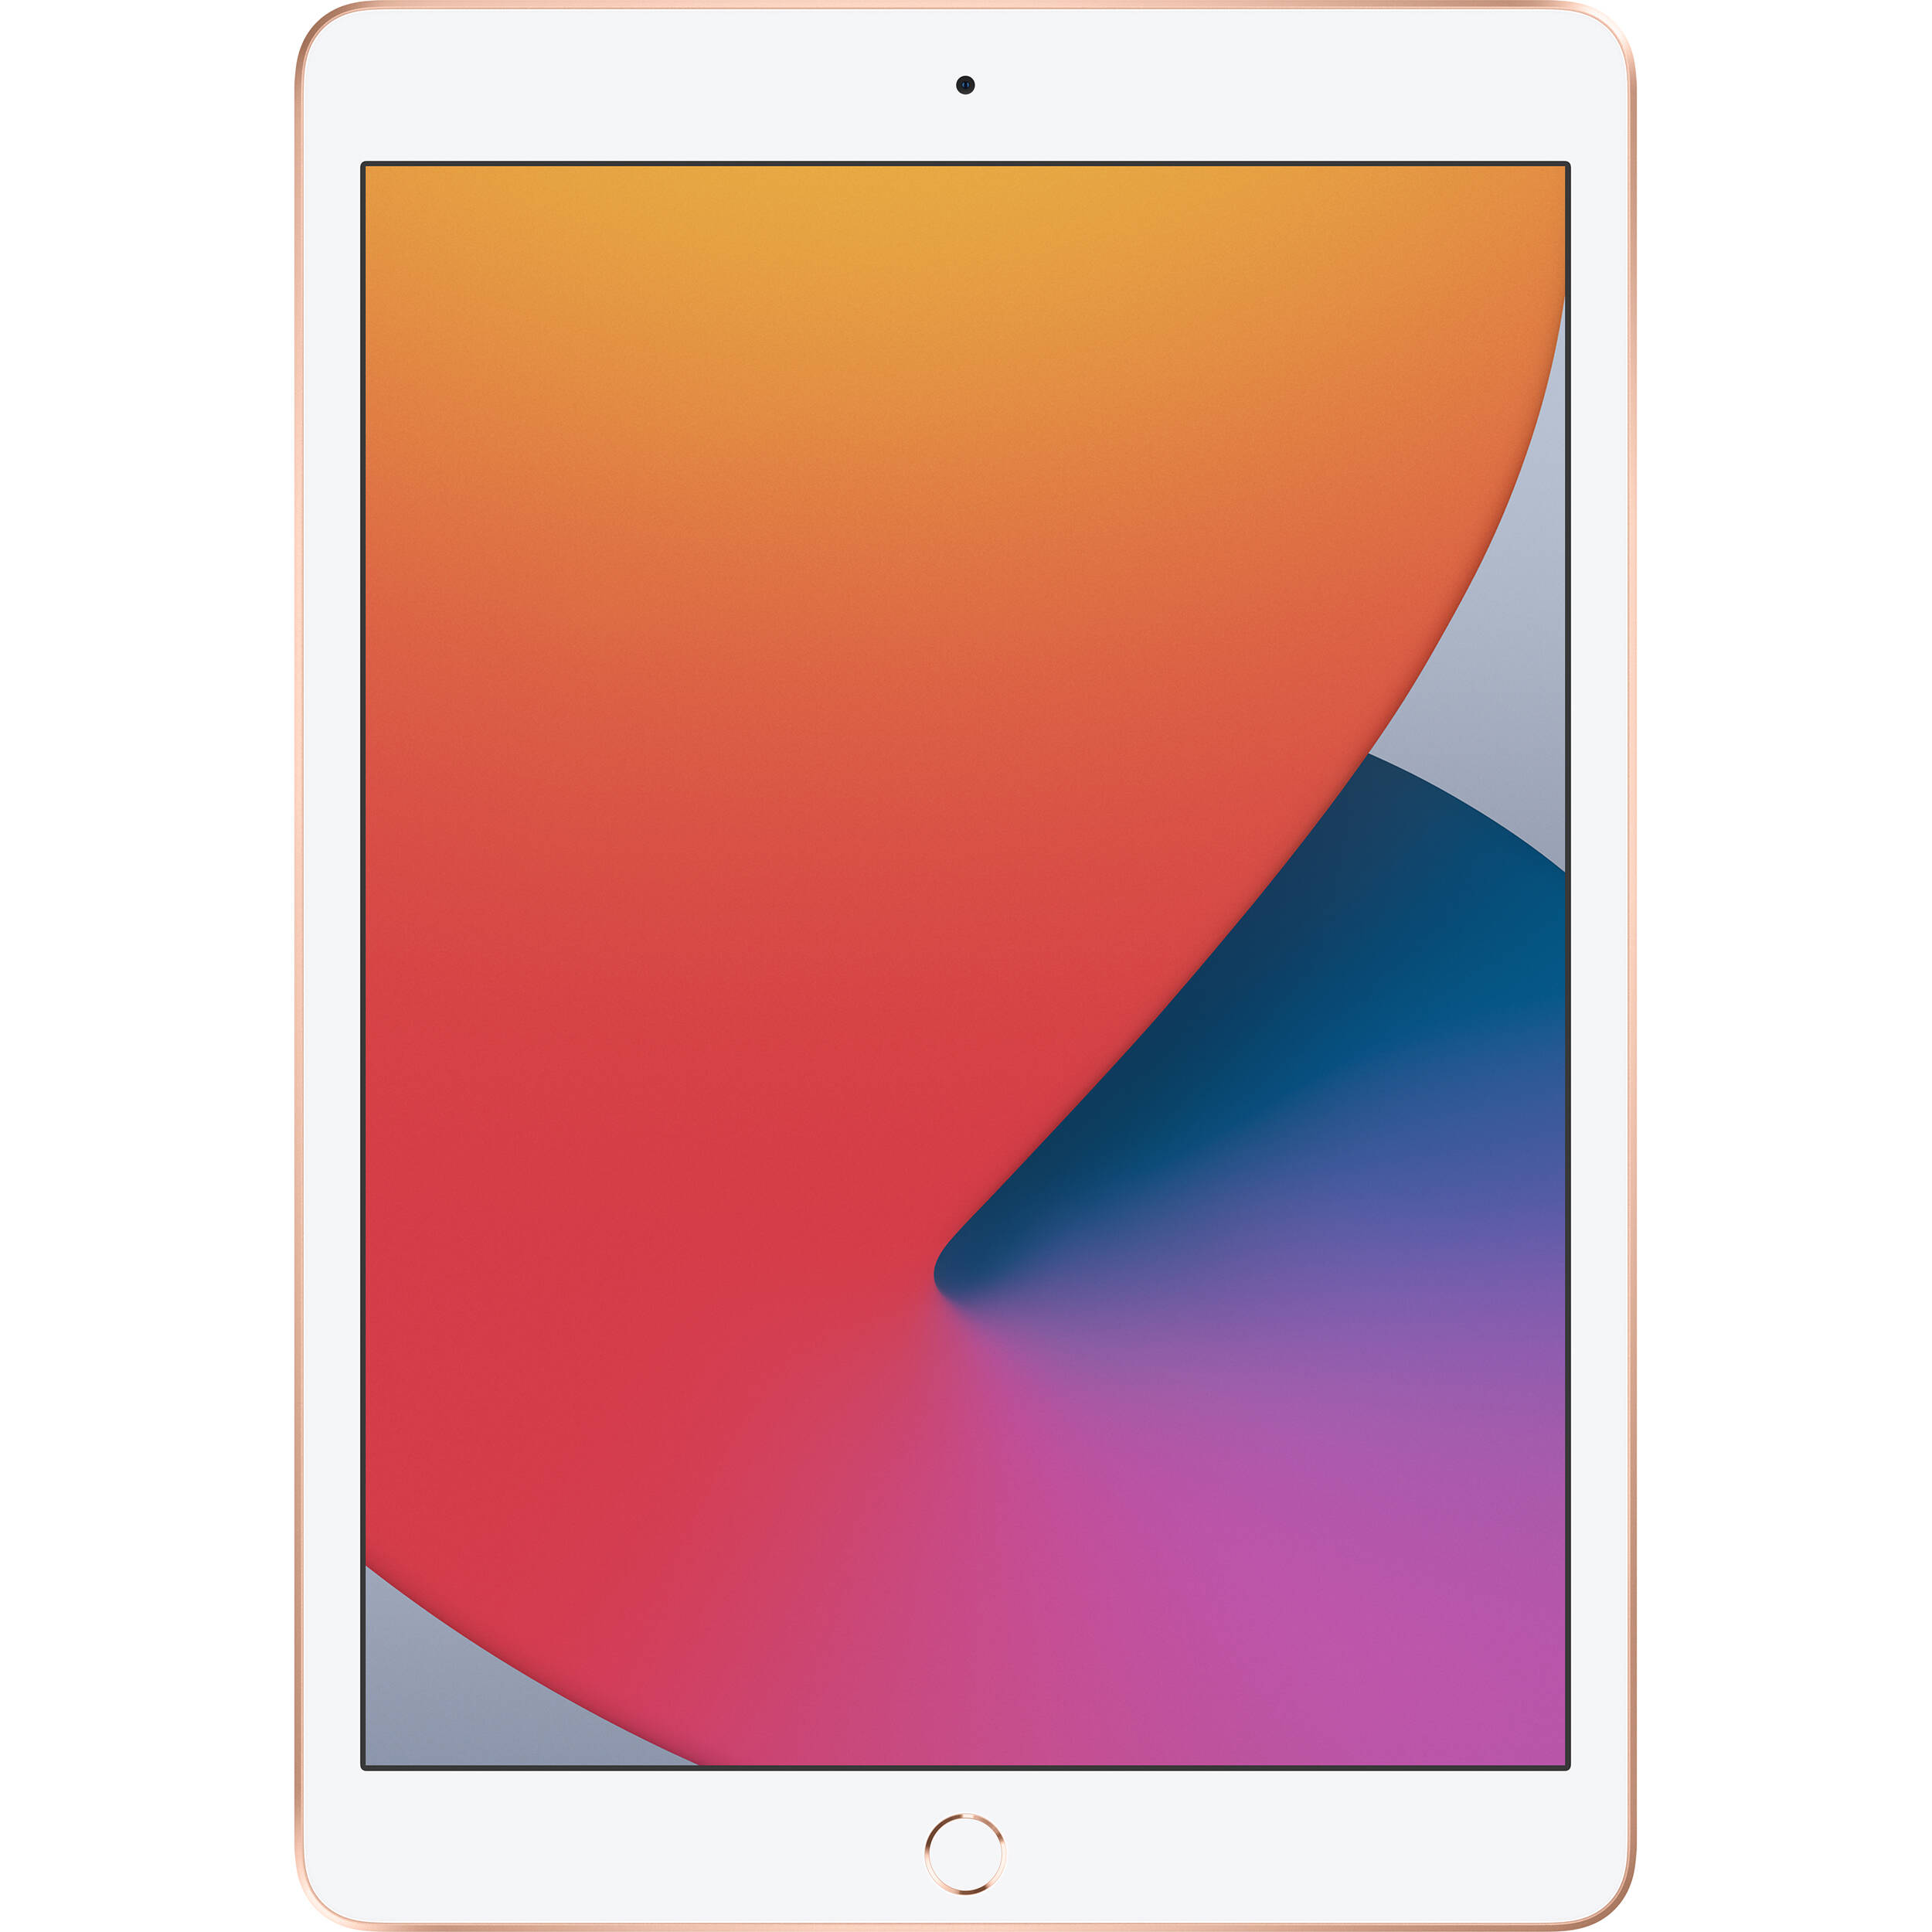 تبلت اپل مدل iPad 10.2 inch 2020 4G/LTE ظرفیت 32 گیگابایت